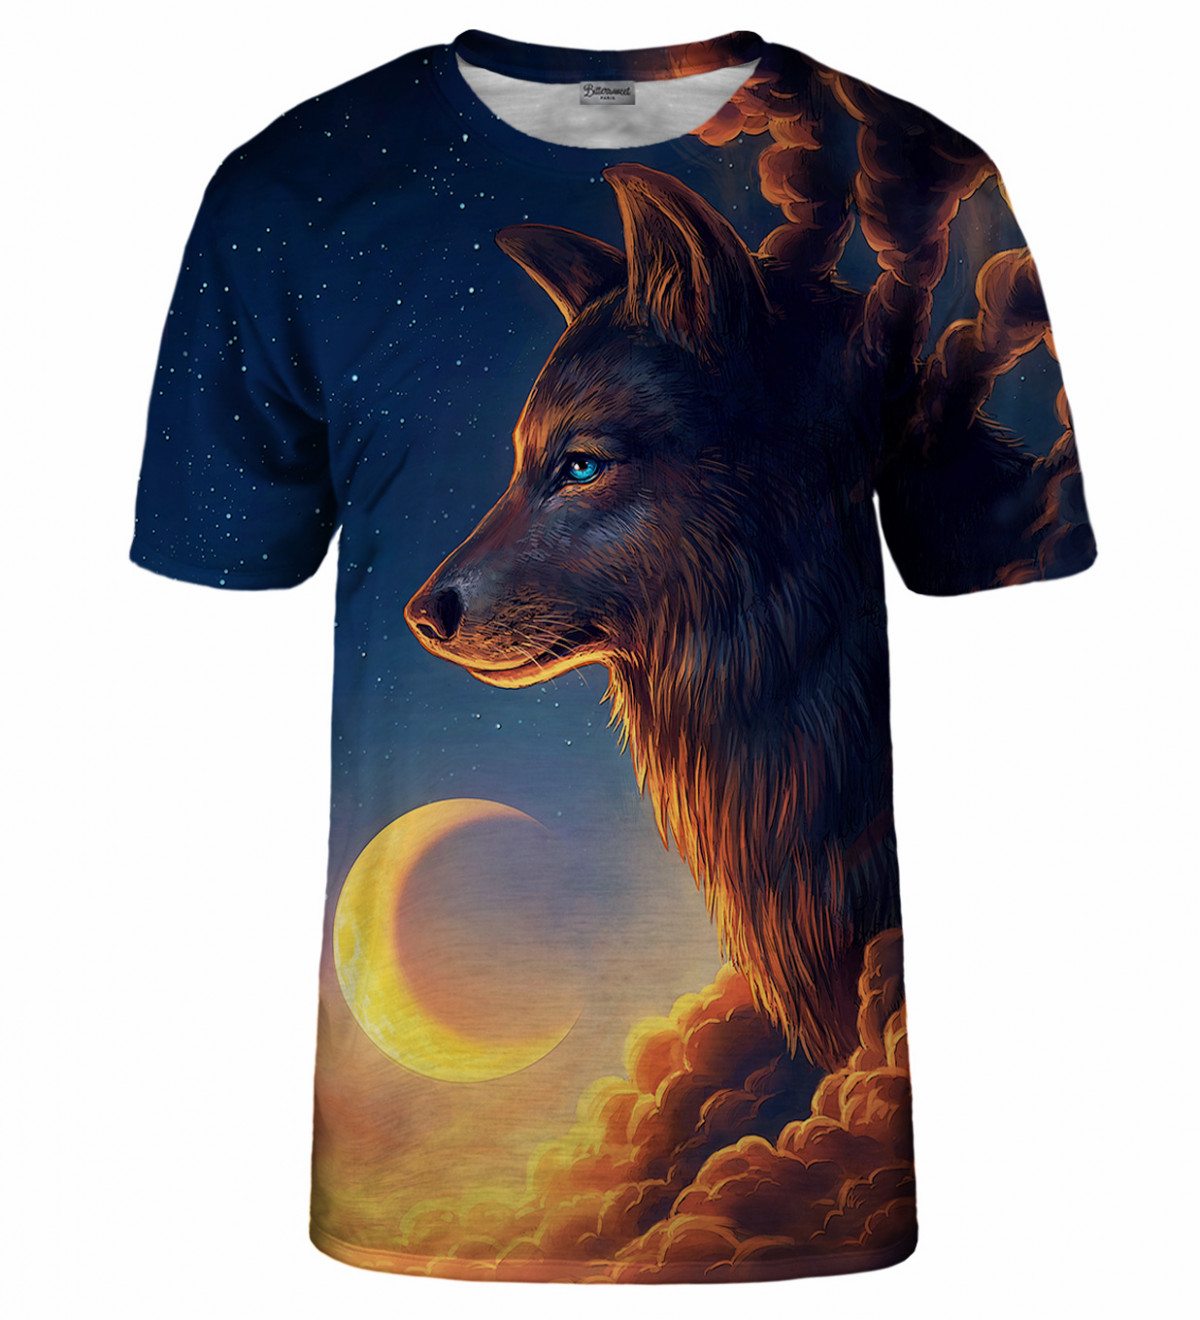 Night Guardian T-Shirt